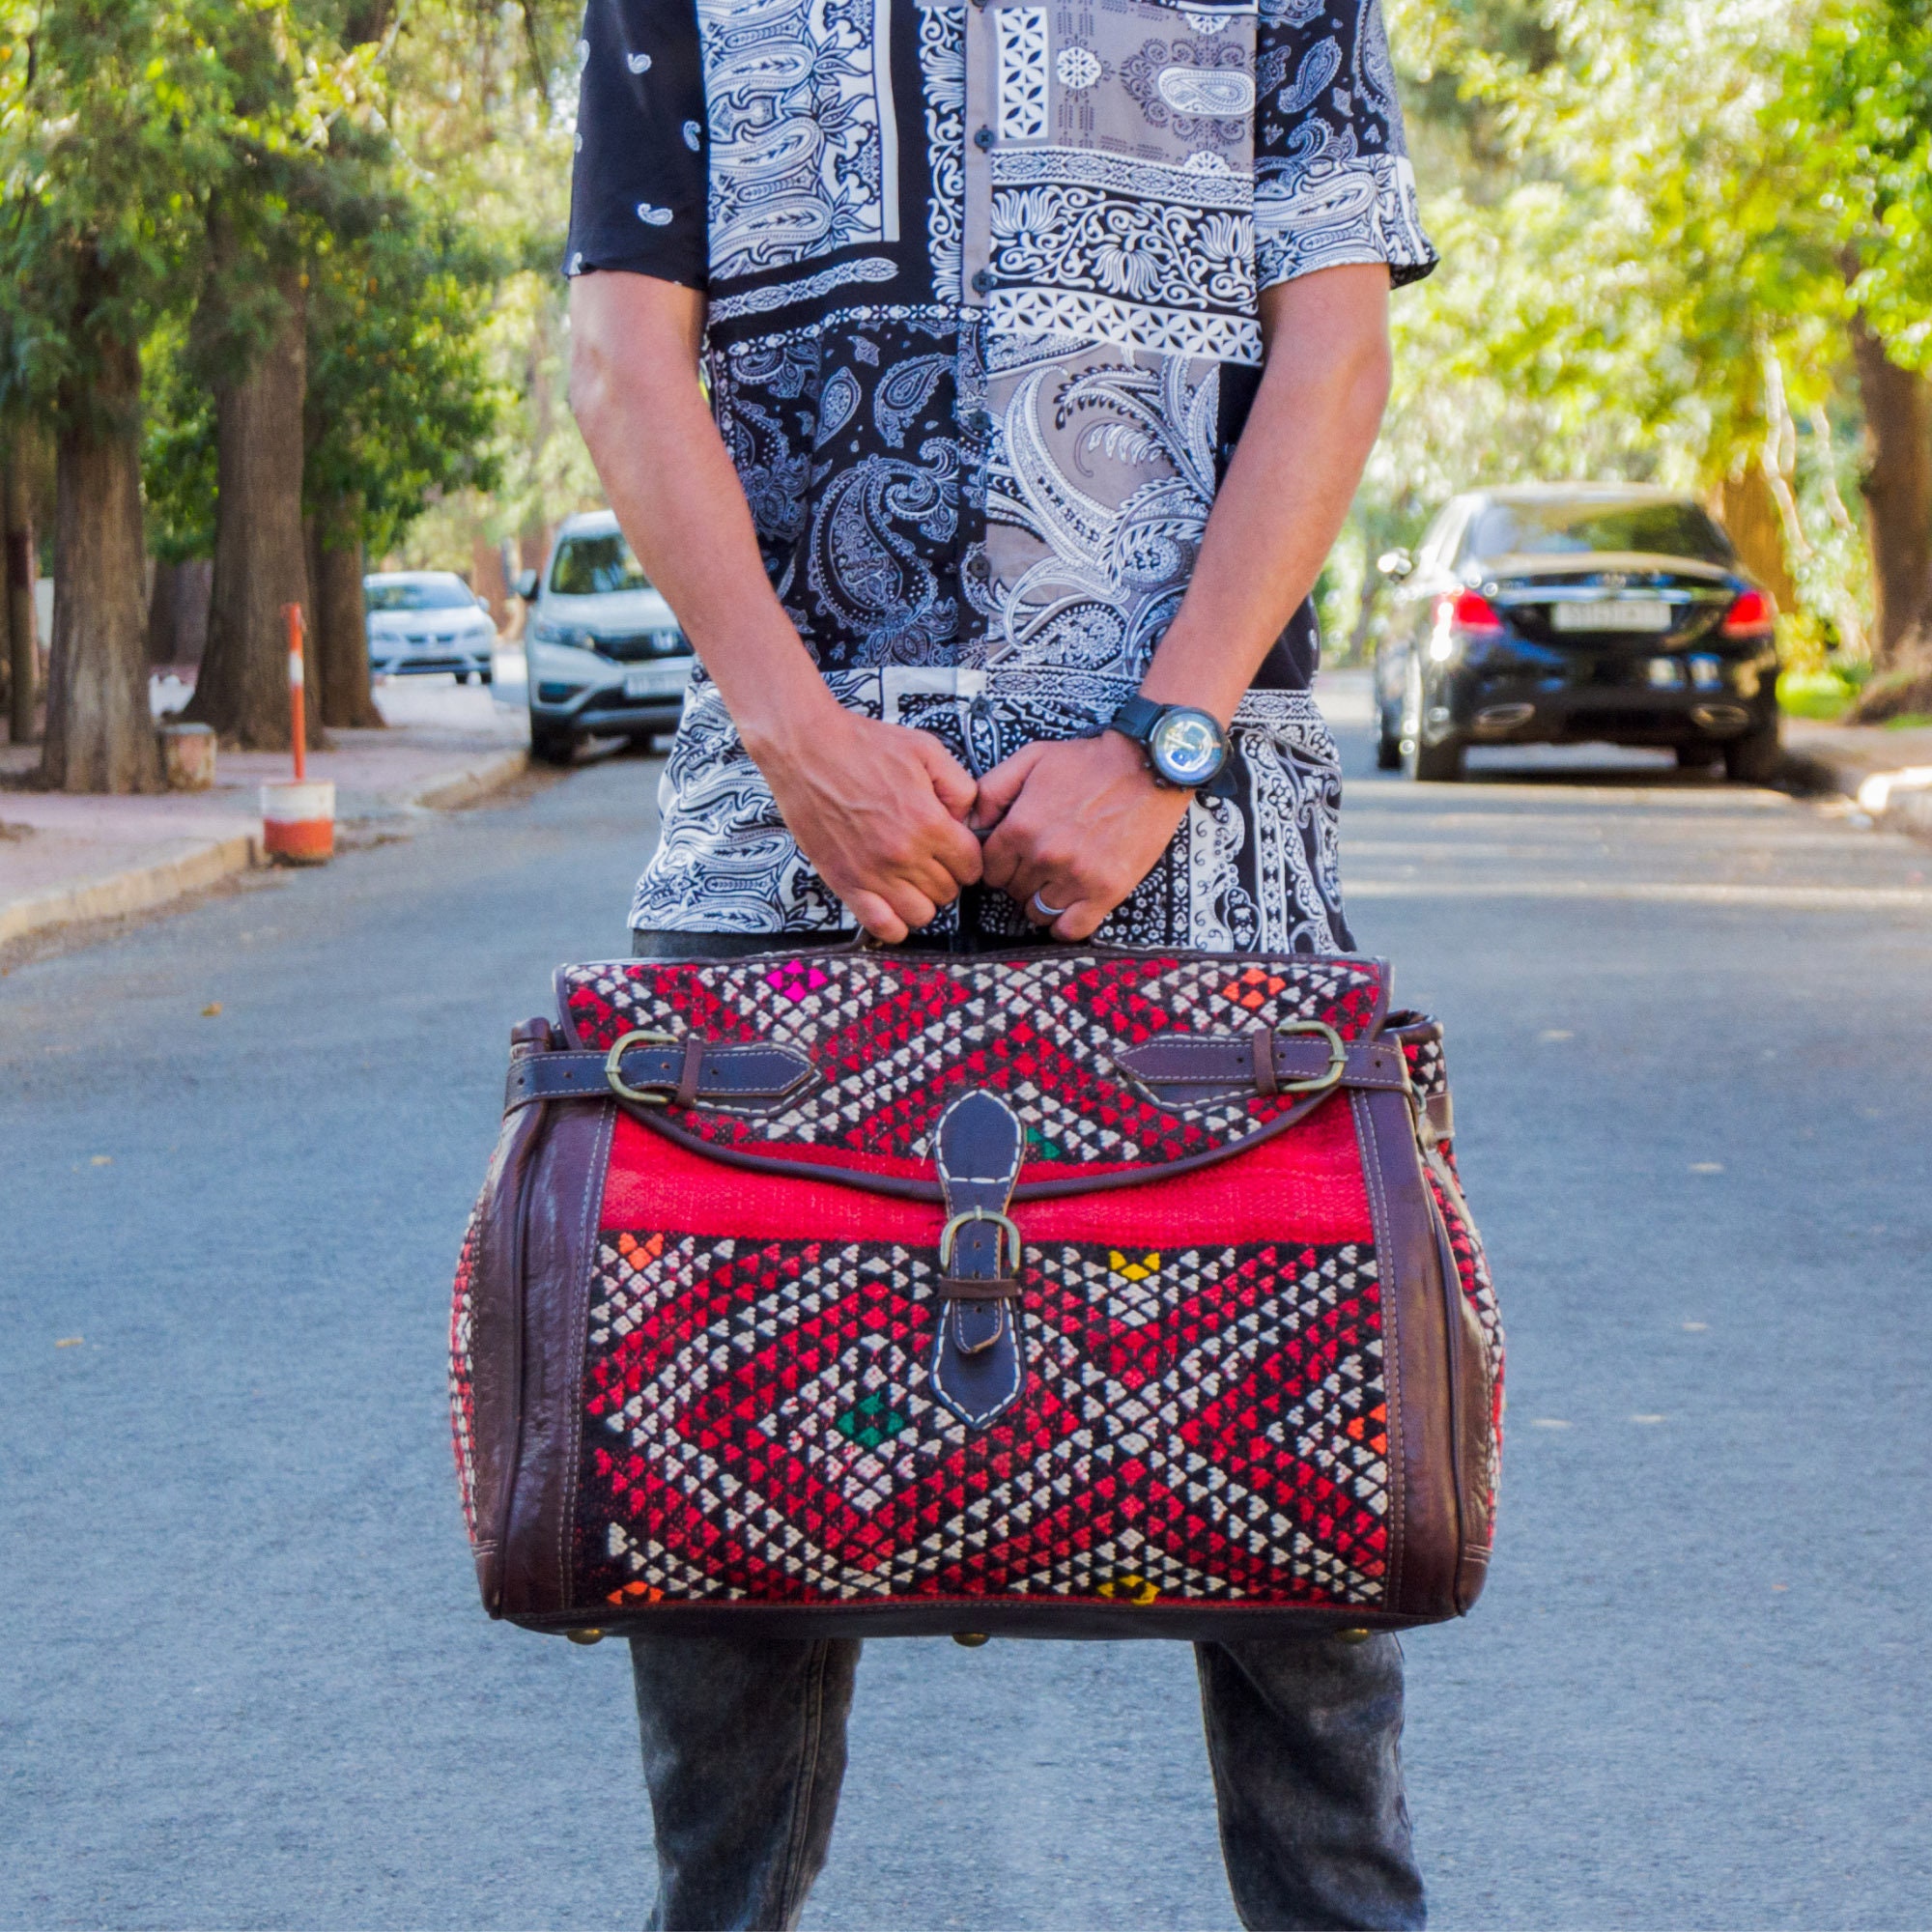 Sacs et bagages Bagages et sacs de voyage Sacs de voyage Sac de voyage en cuir made in Marrakech idée cadeau pour lui 